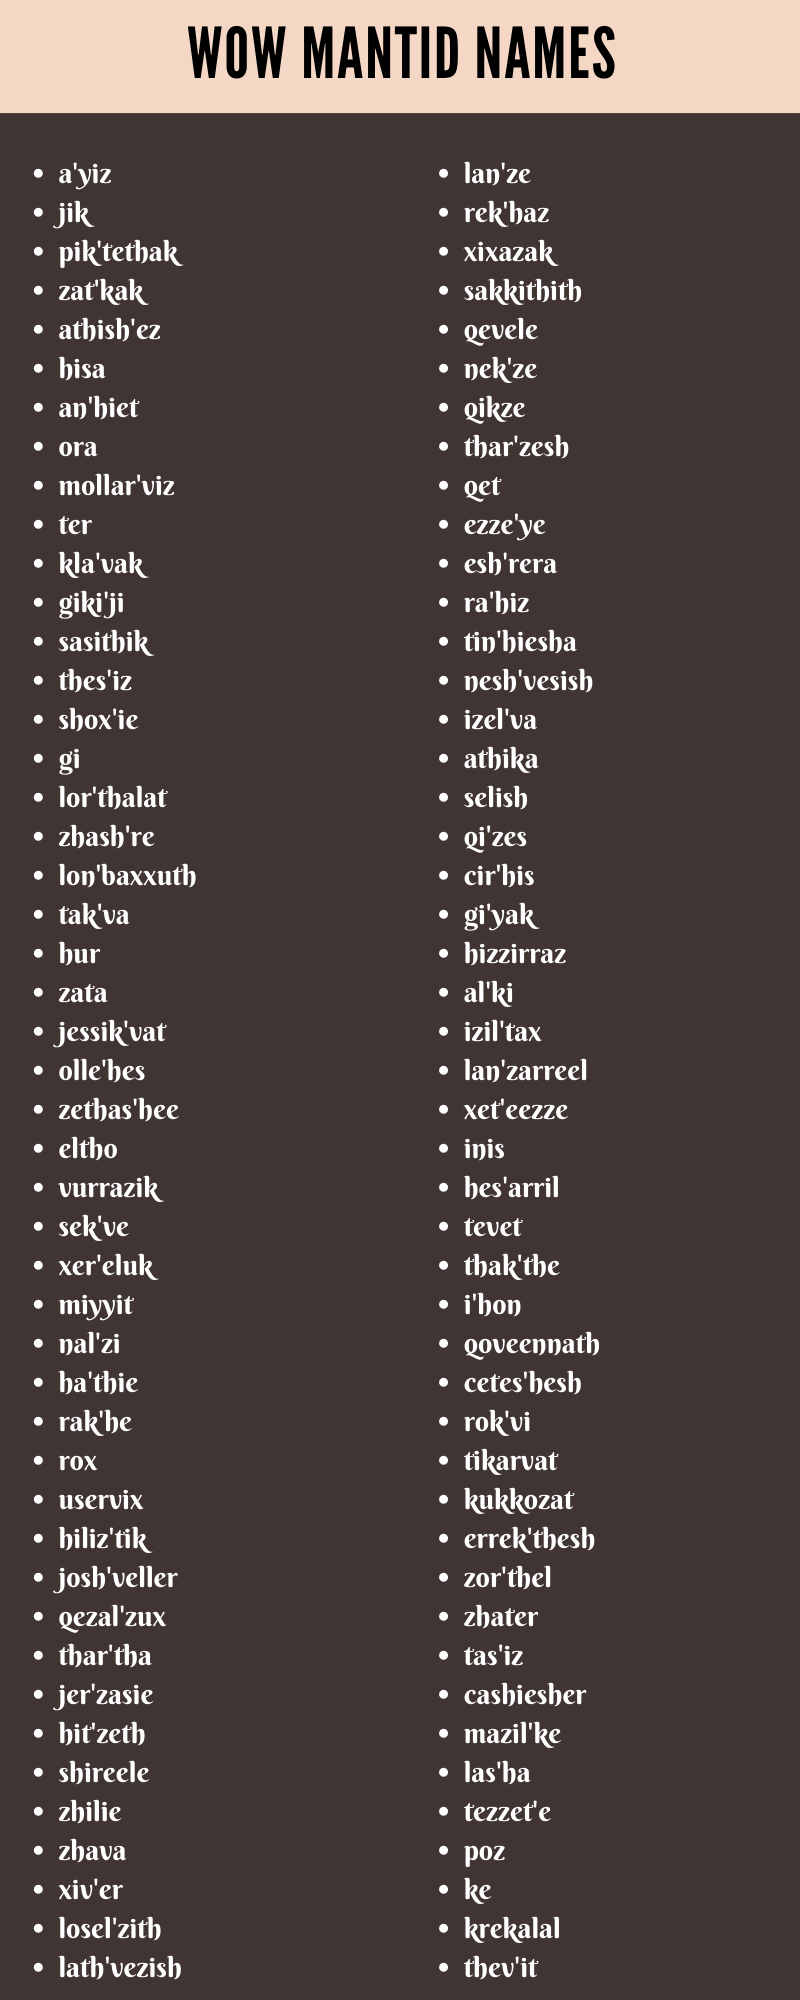 Wow Mantid Names